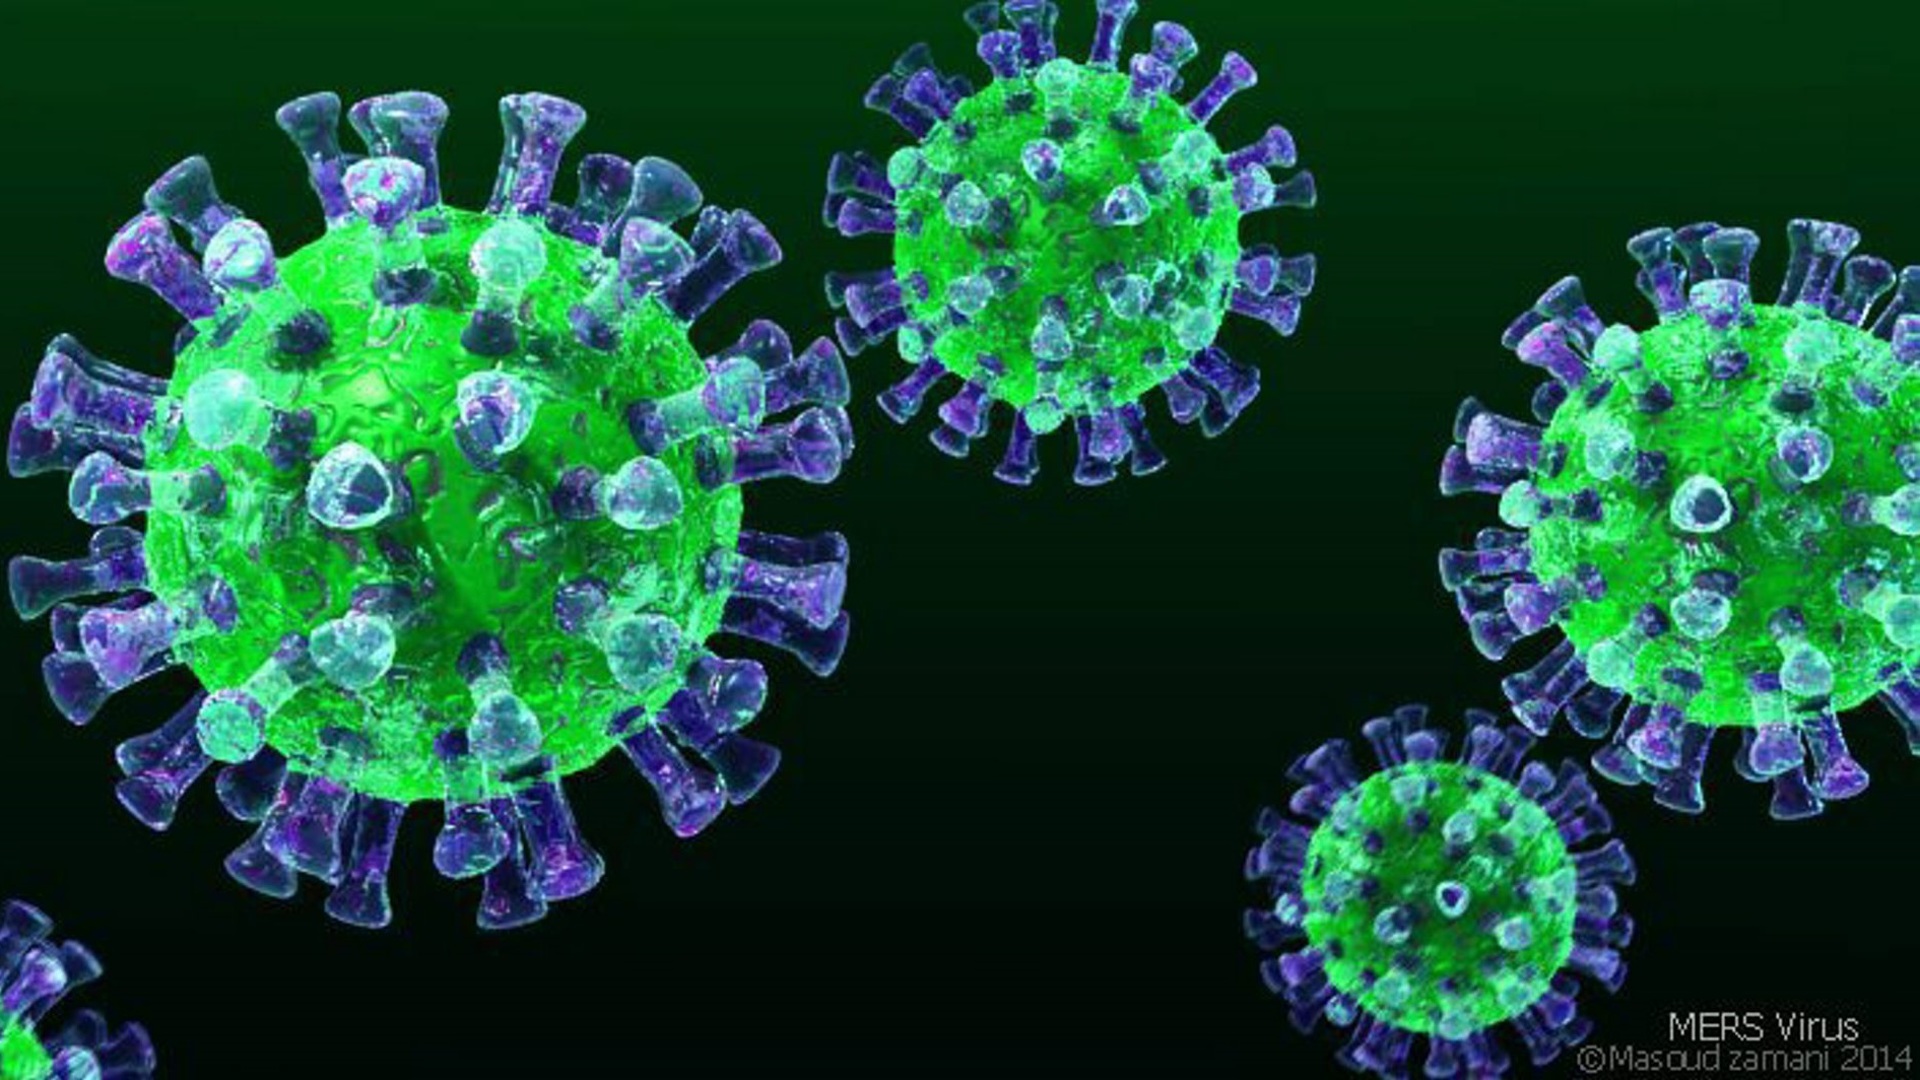 ҚР ДСМ: Қазақстанда коронавирустық инфекция тіркелген жоқ  